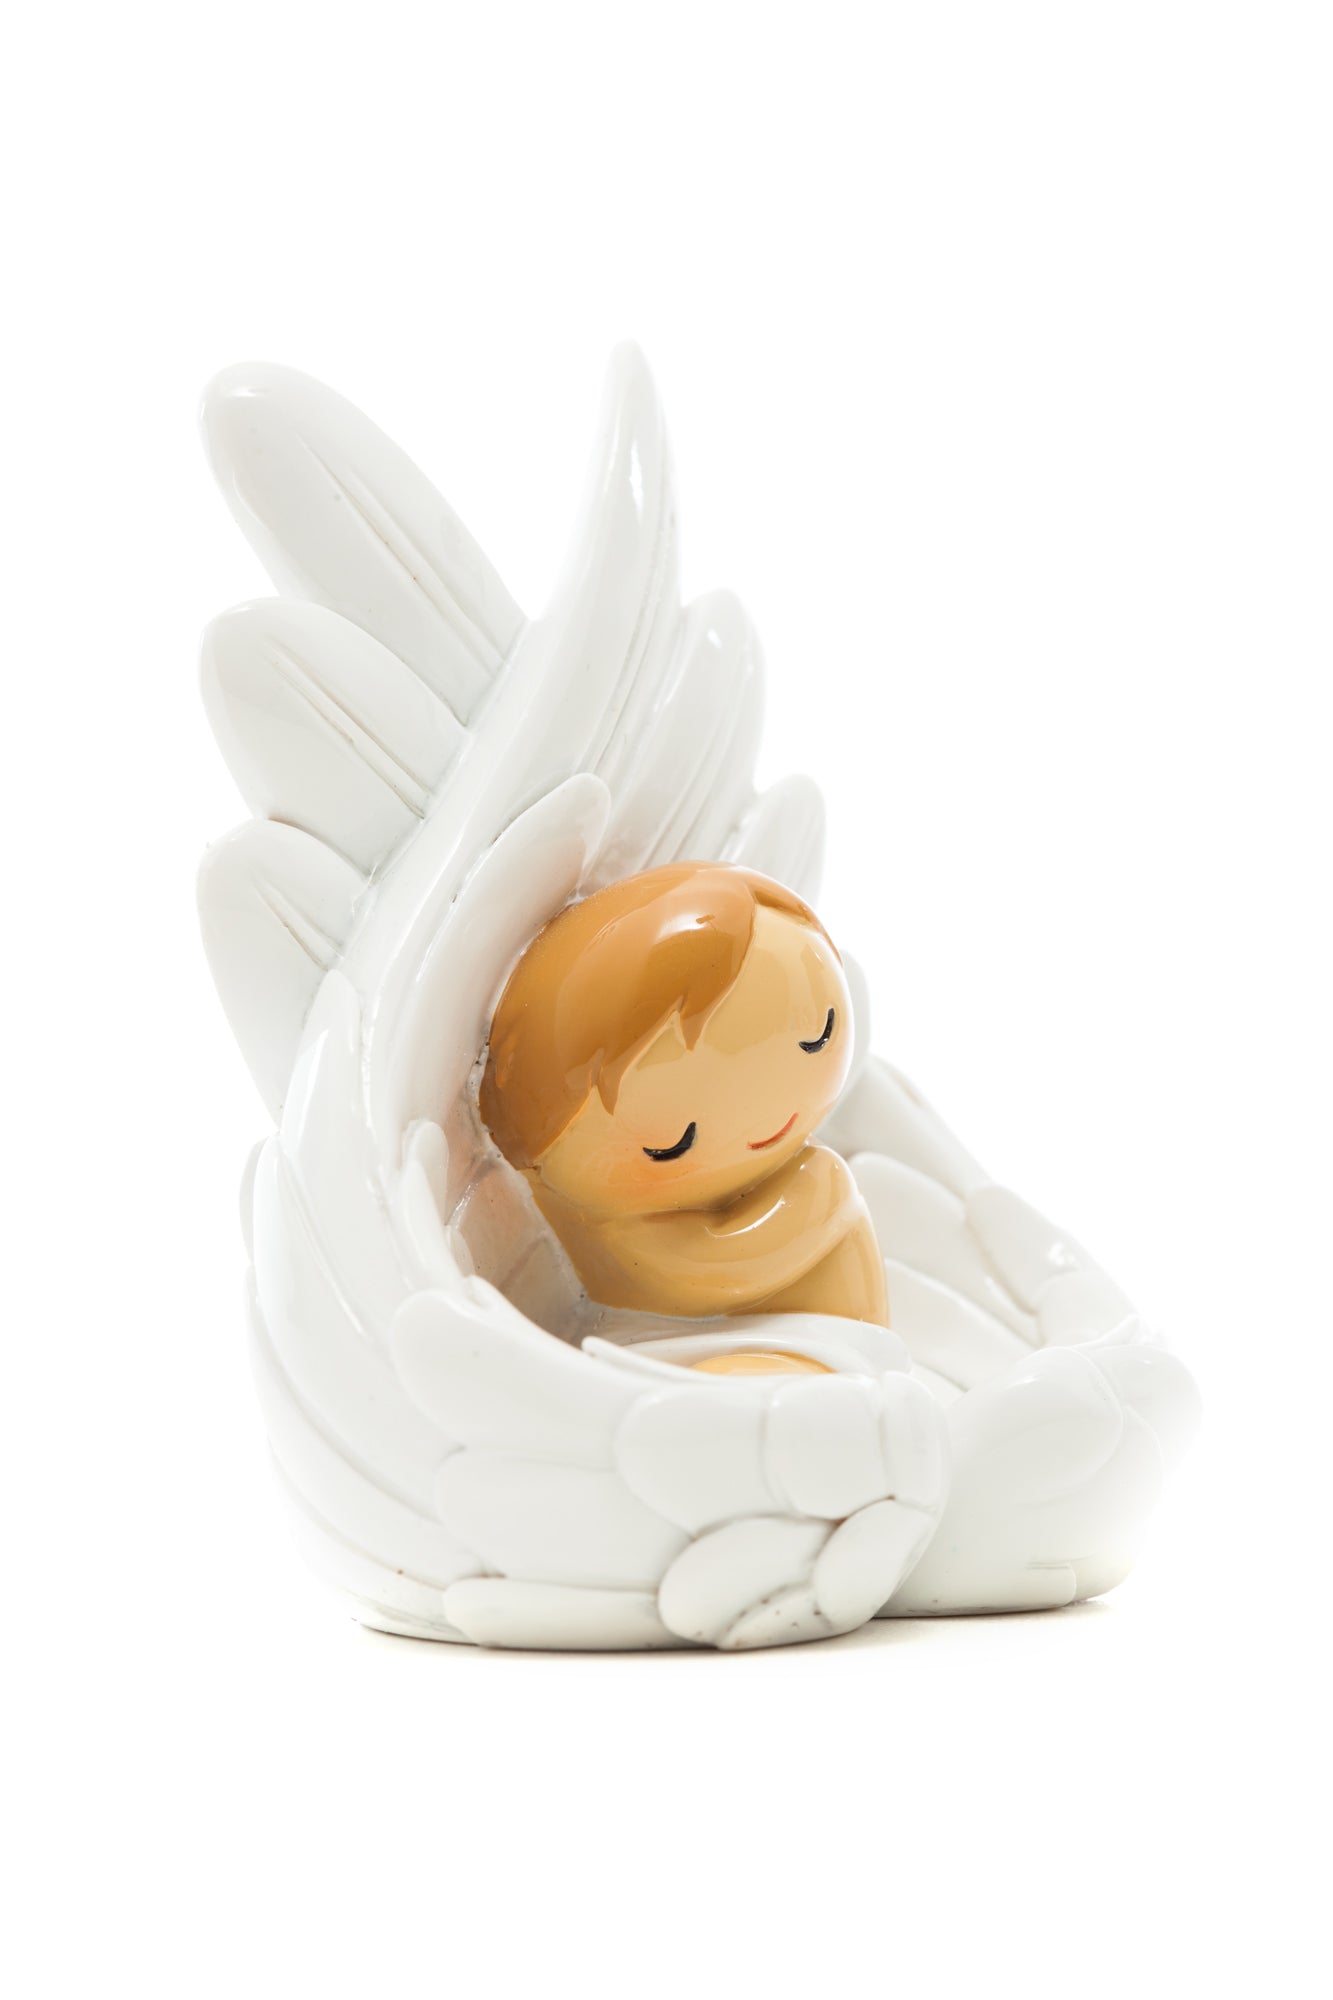 Baby Angel Sleeping on Wings statue